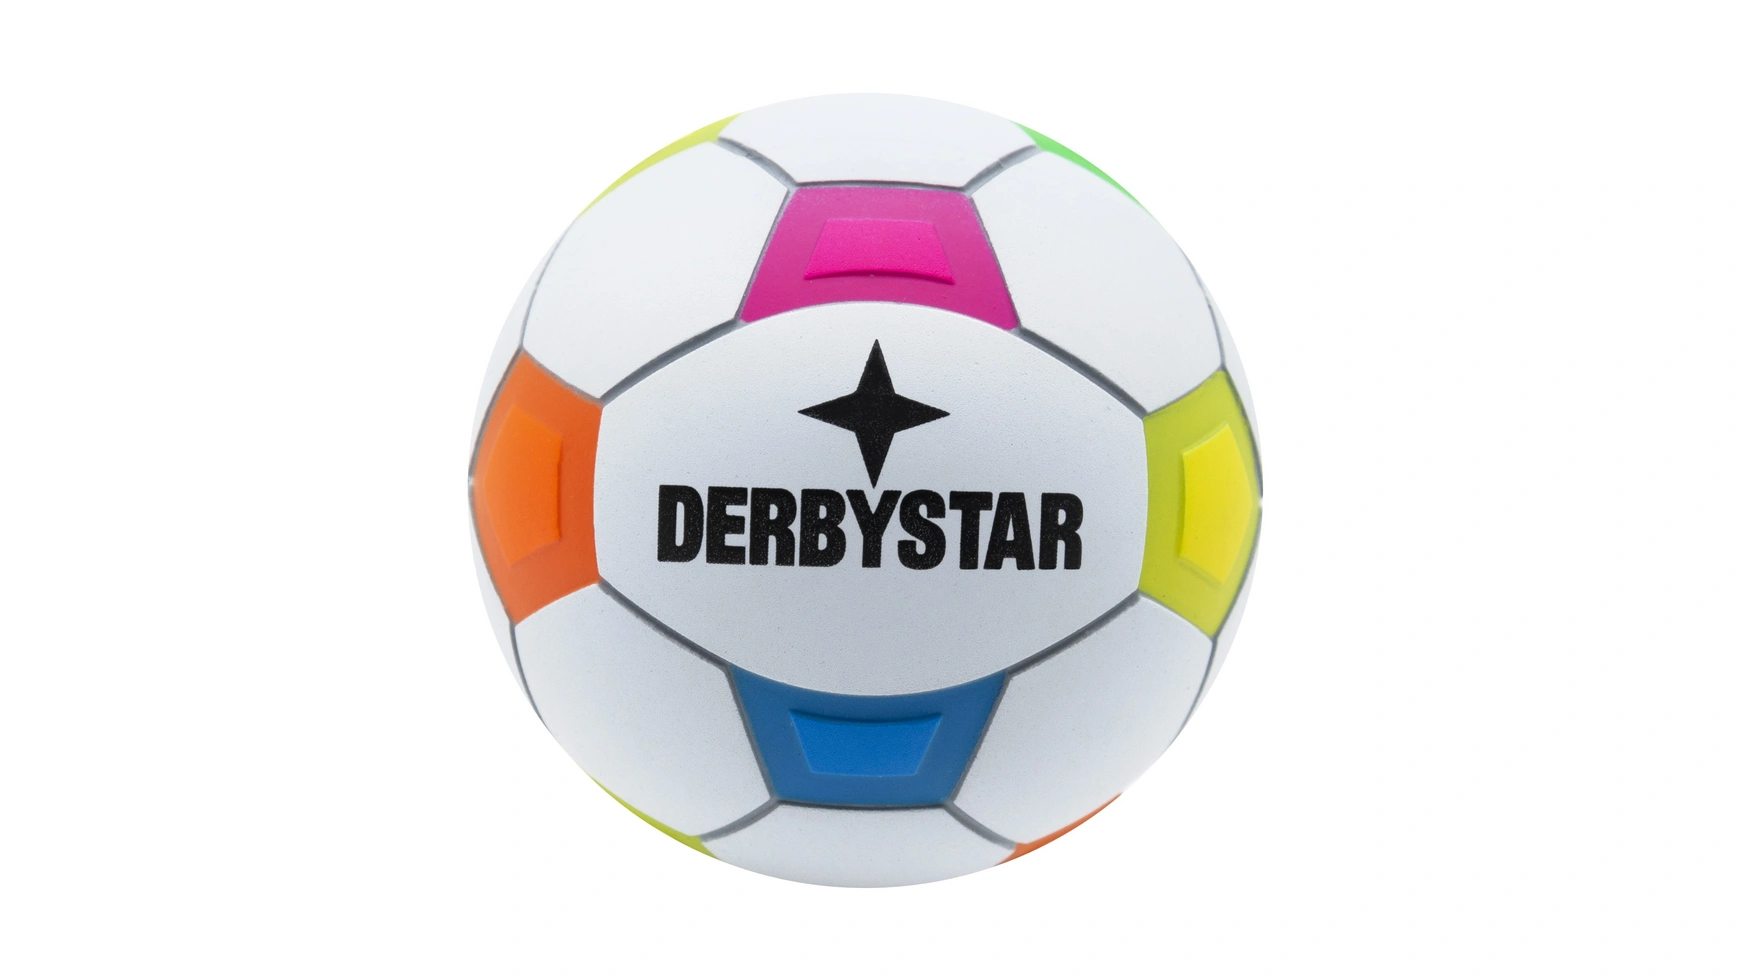 цена Derbystar МИНИ футбол